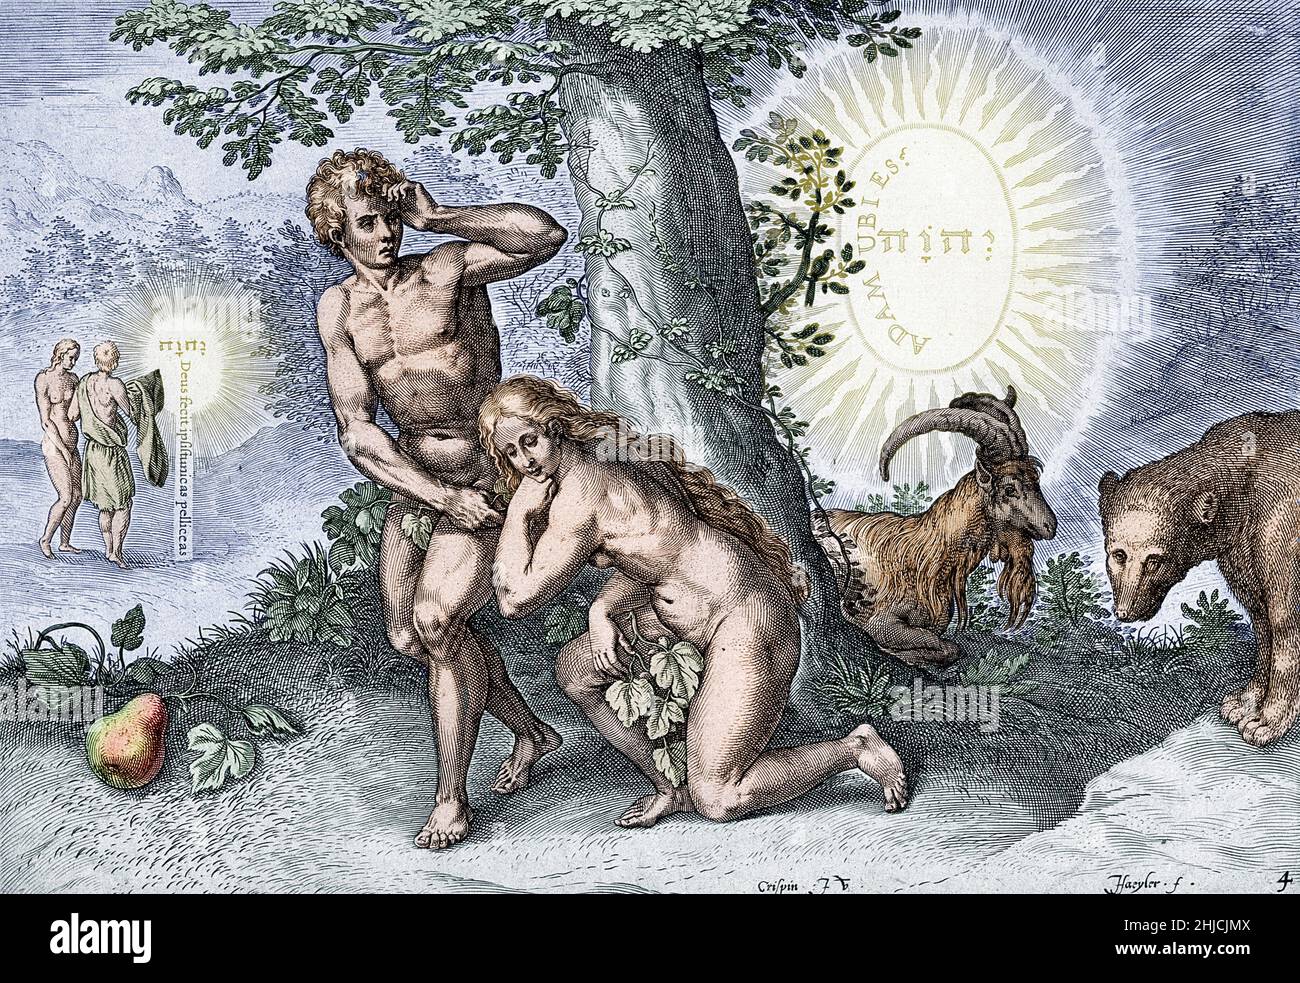 L'illustration colorisée dépeint Adam et Eve dissimulant leur nudité dans le jardin d'Eden après avoir mangé le fruit interdit.Au loin, à gauche, ils reçoivent des vêtements de Dieu.Le tétragrammaton, 'Yahweh', apparaît en hébreu au centre des deux cercles en arrière-plan.À gauche, une inscription latine se lit comme suit : « Dieu leur a fait des tuniques de peau »; à droite, le latin se lit comme « Adam, Où êtes-vous ? »Colorisation d'une gravure de ligne par J. Haeyler d'après C. van den Broeck, vers 1570. Banque D'Images